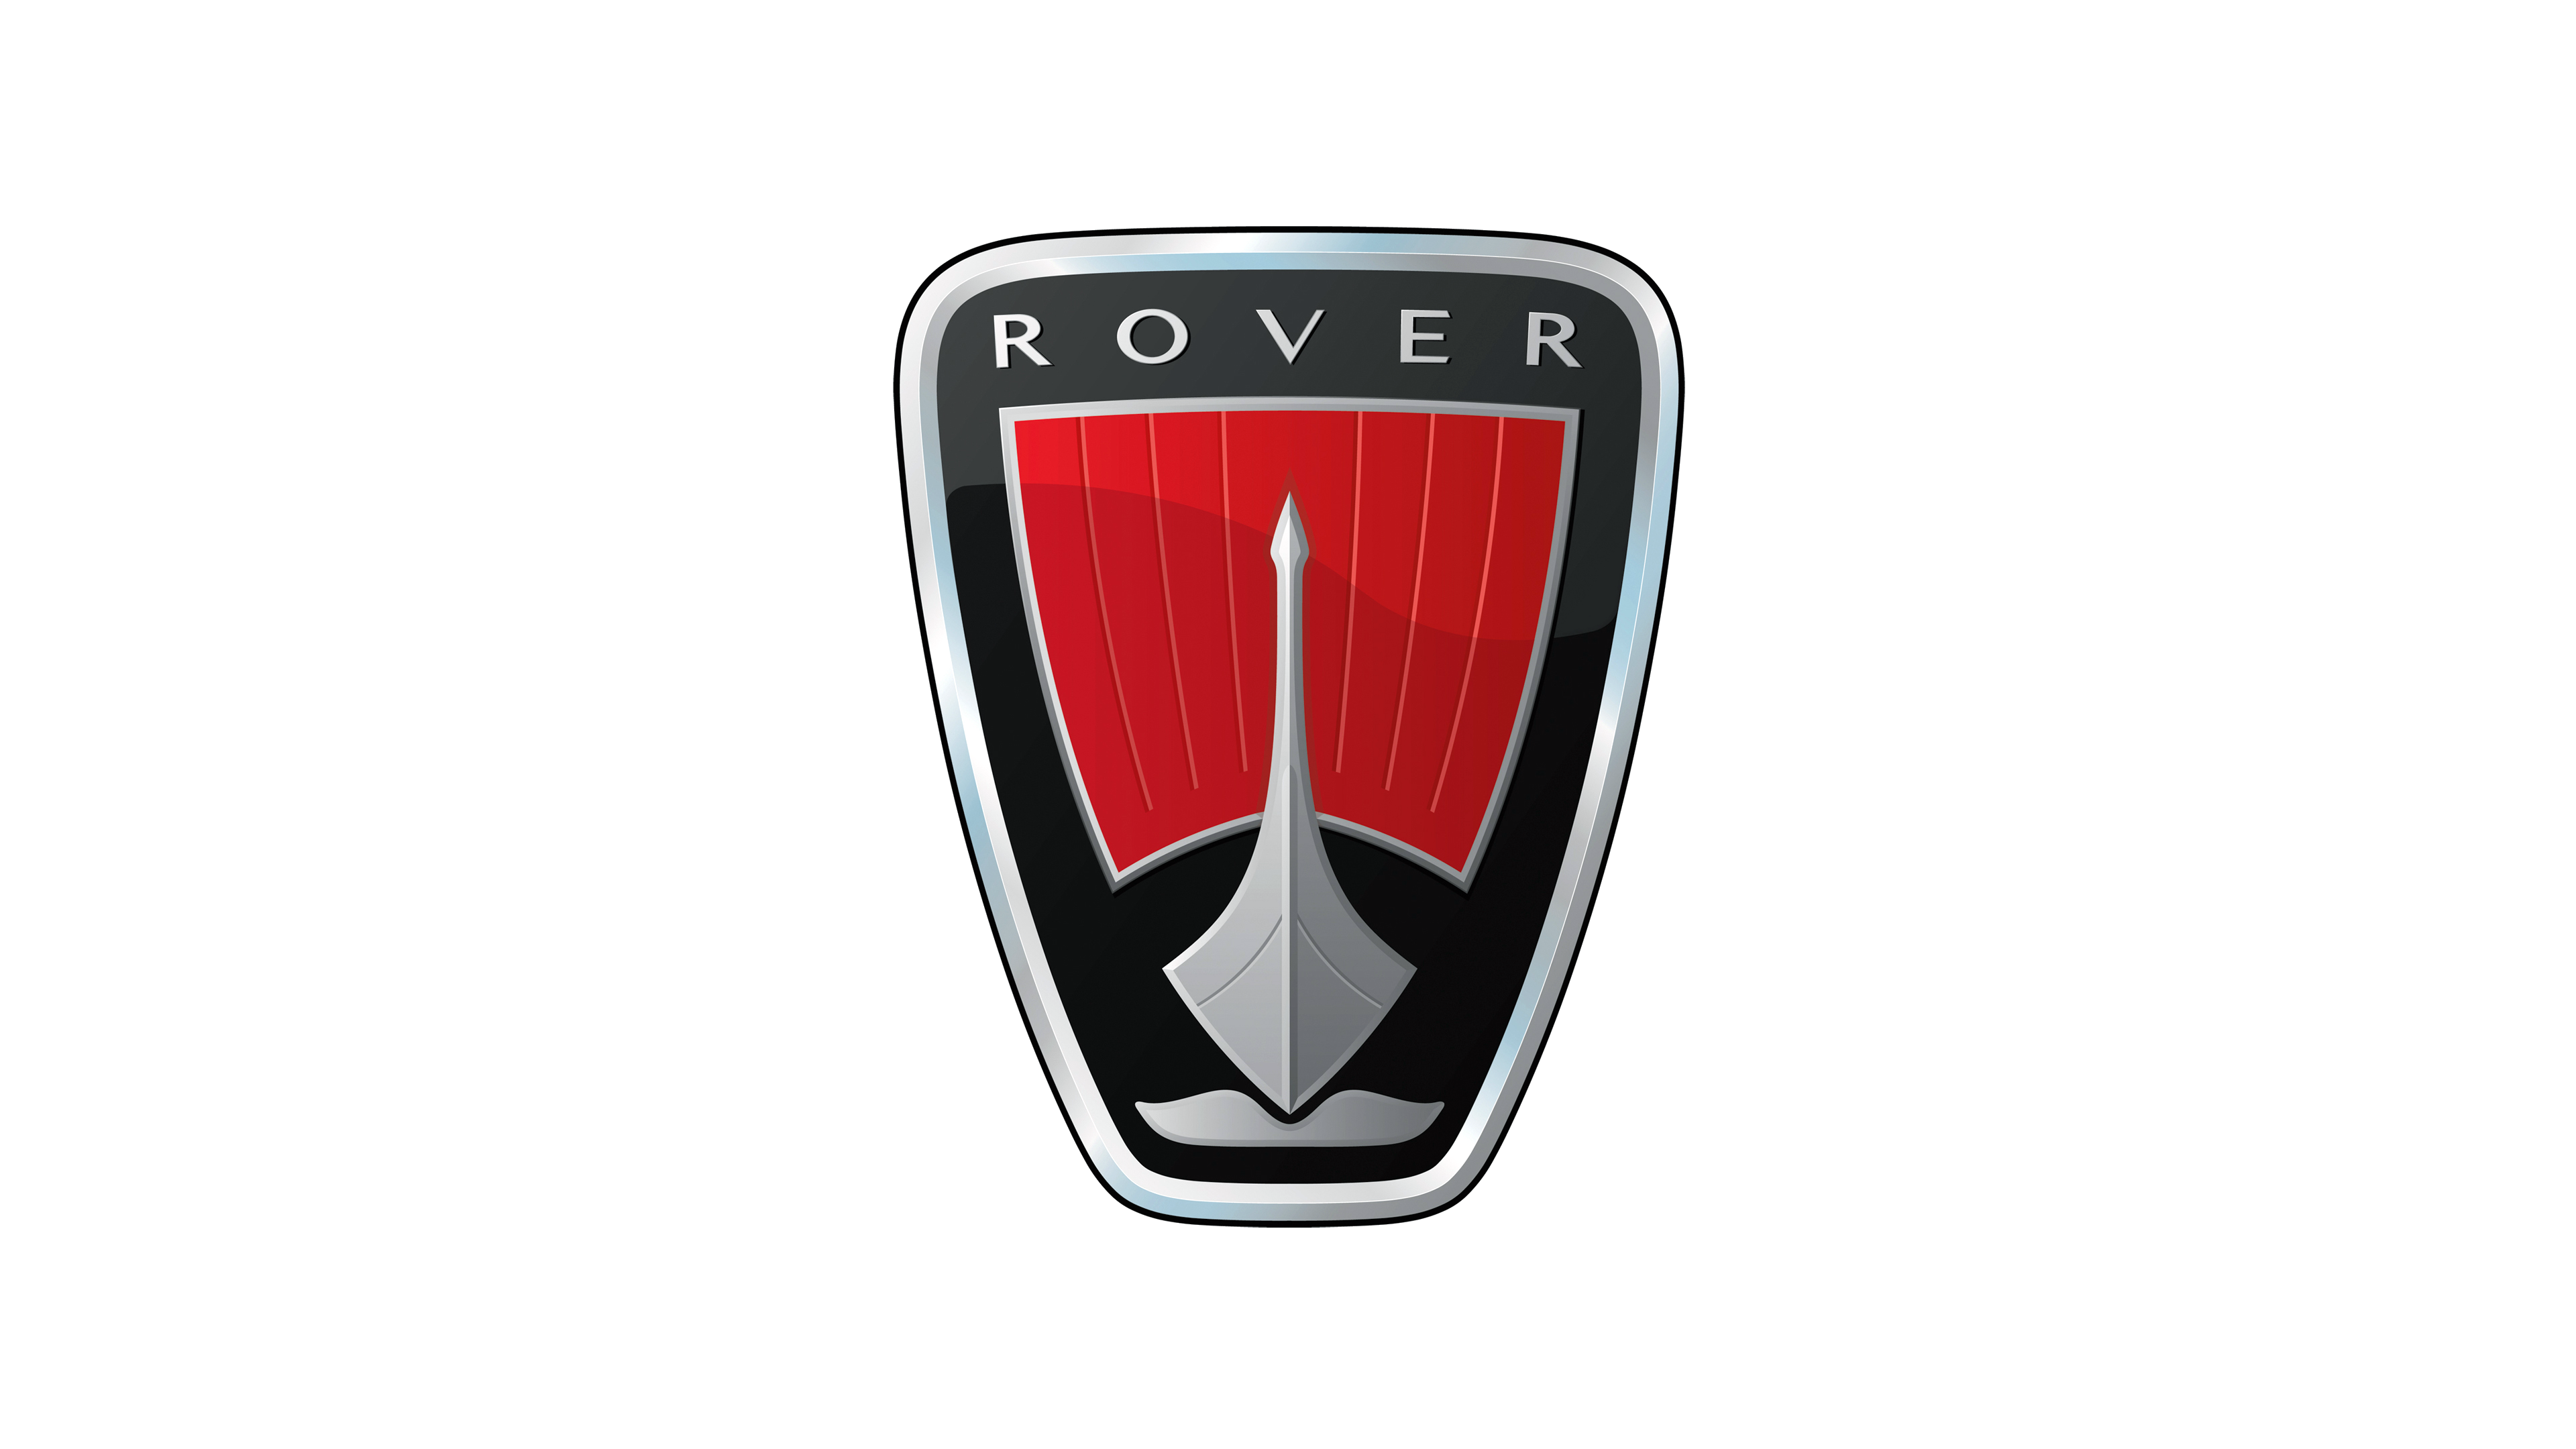 Silver Range Rover Evoque Car